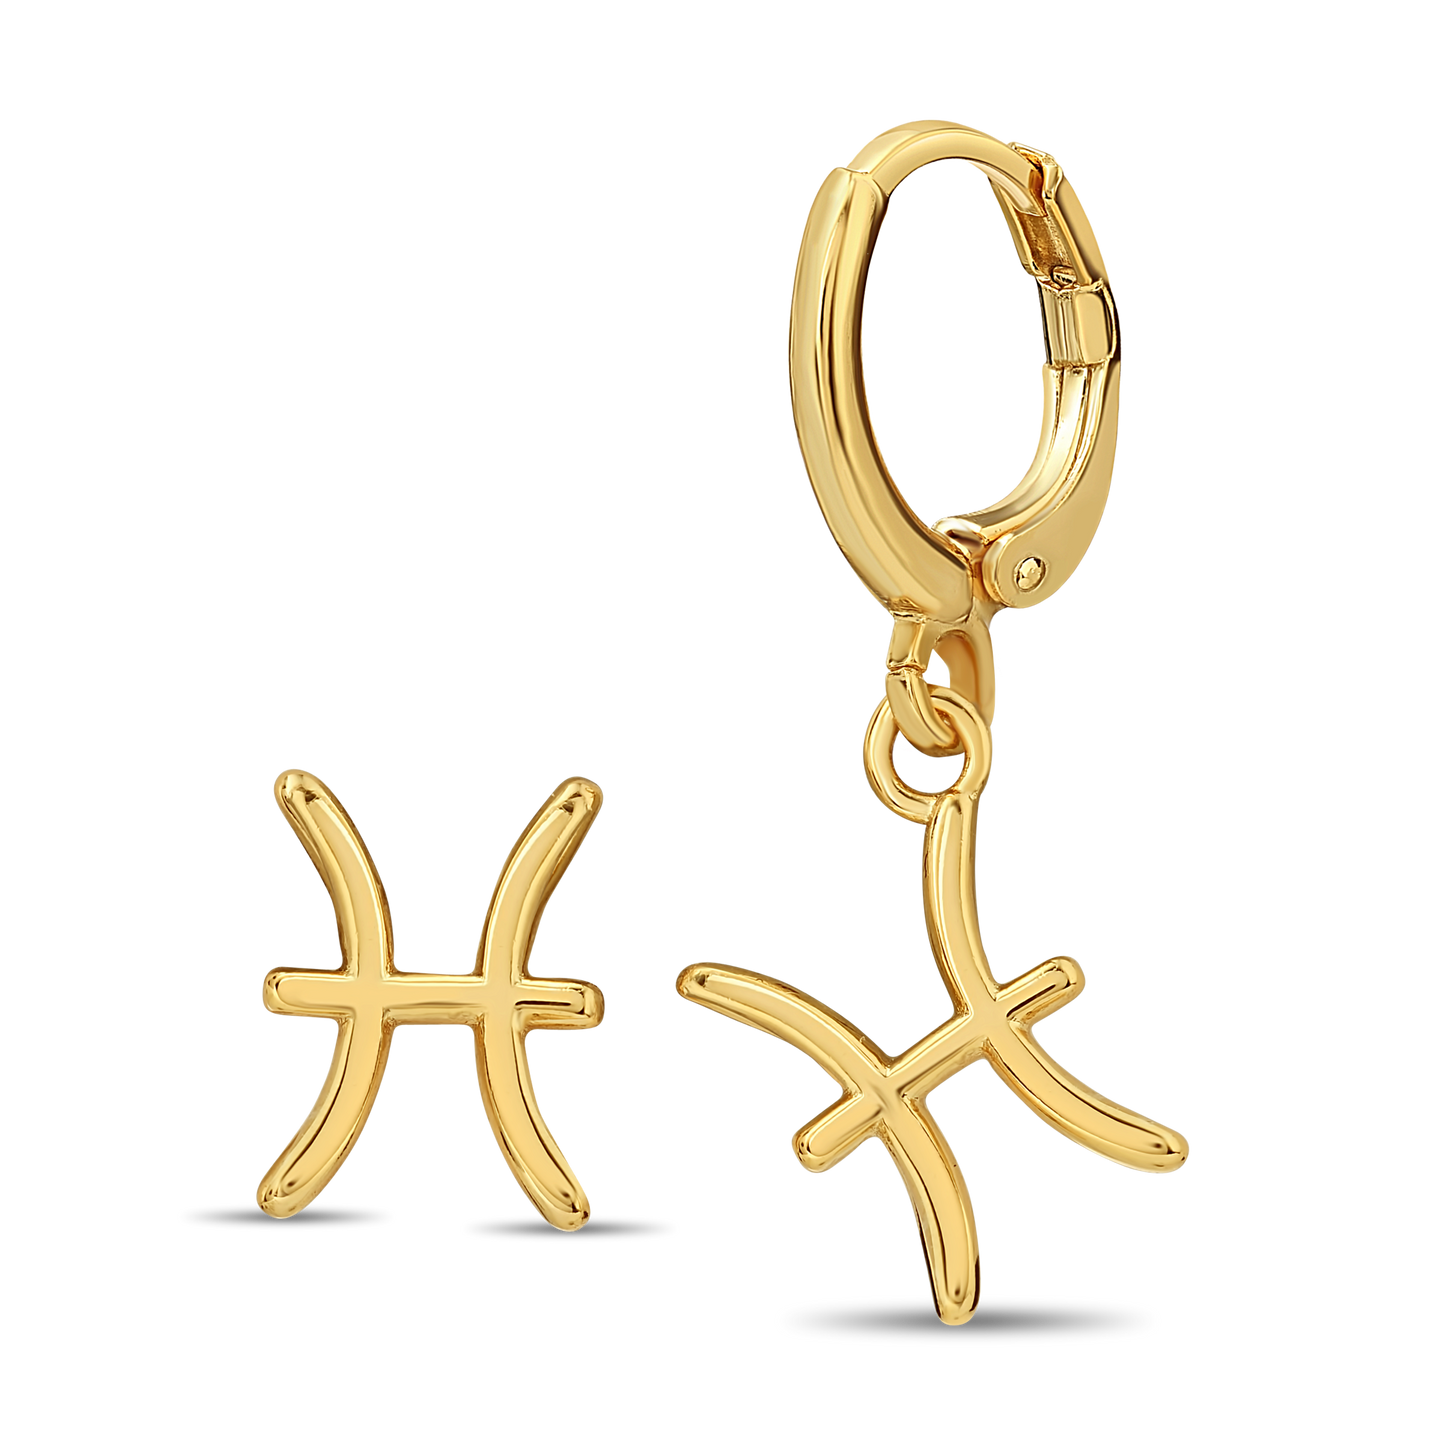 Astro Zodiac earrings